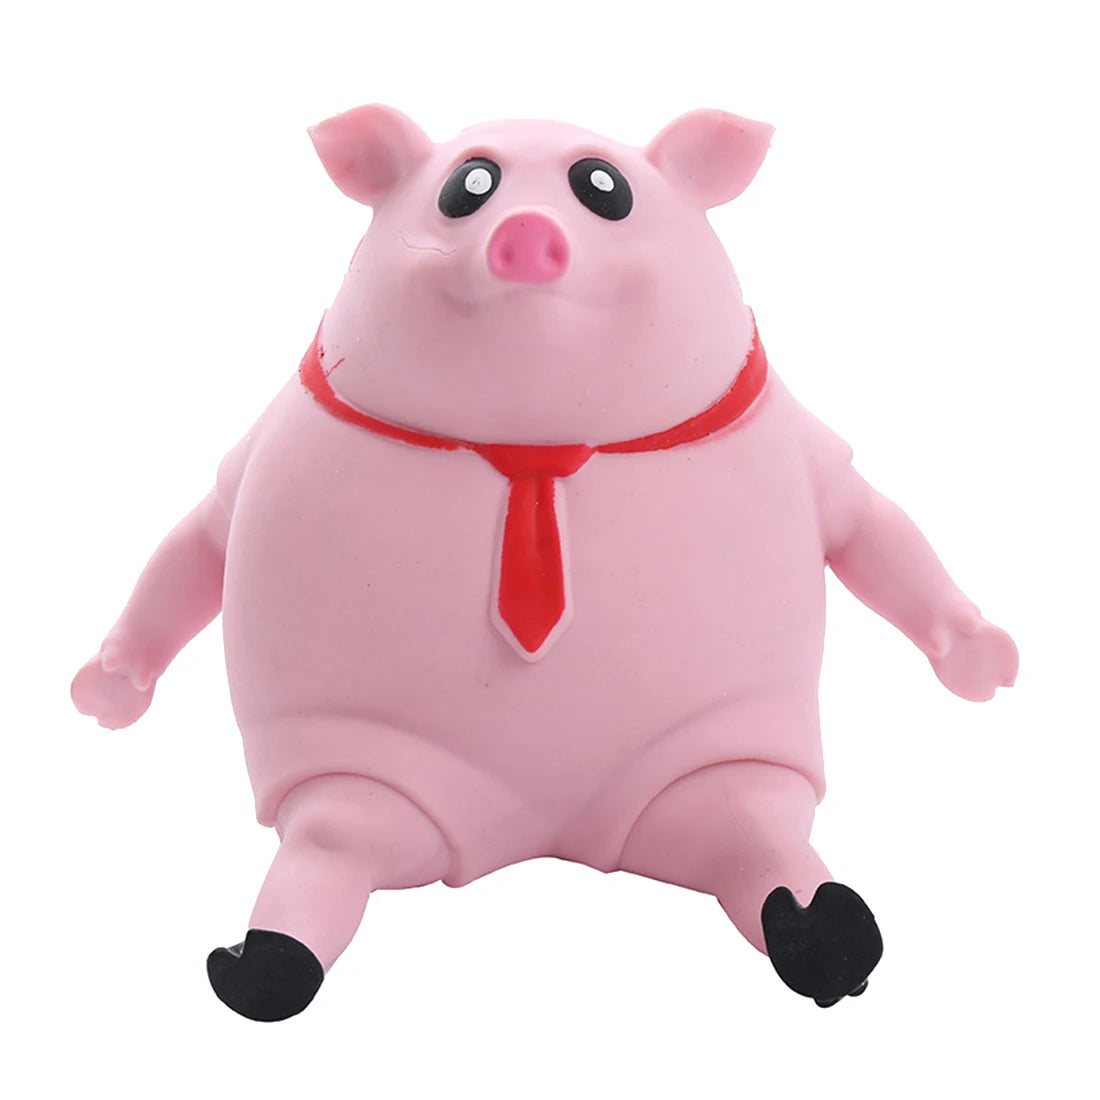 Squishy Pig Decompression Toy